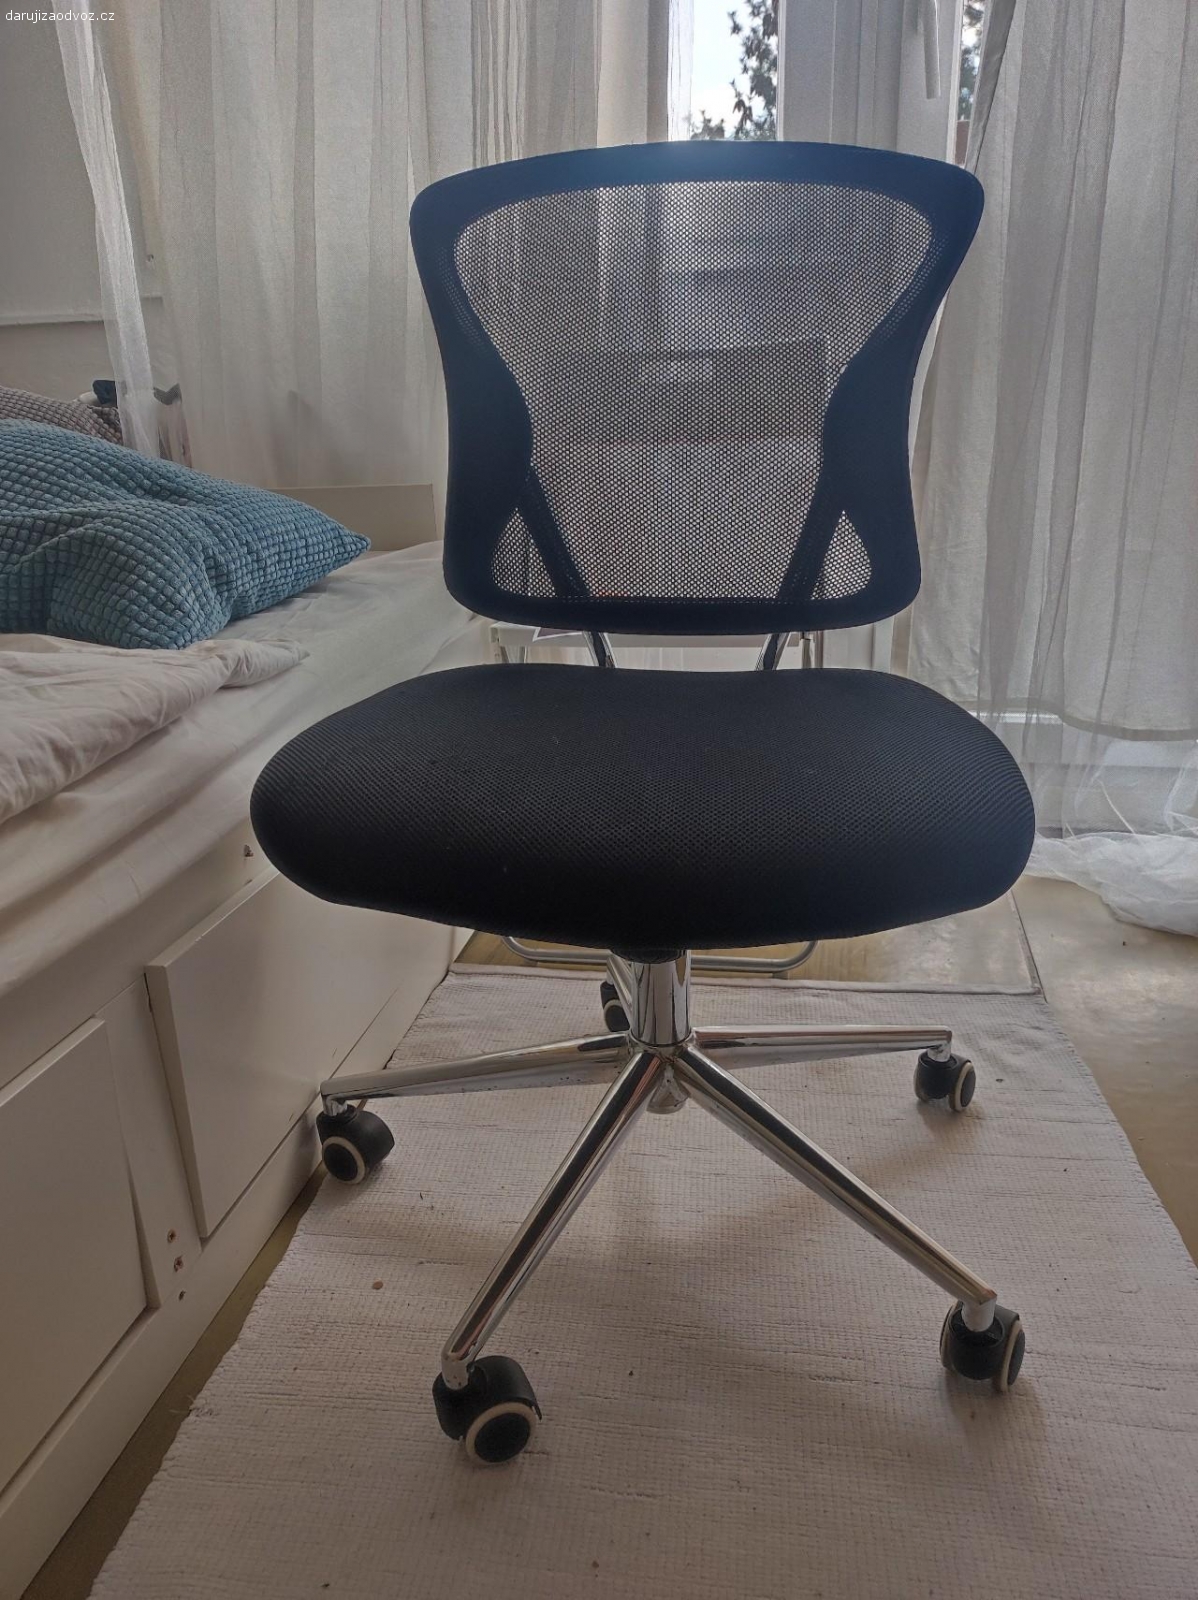 Kancelářská židle. Daruji kancelářskou židli. Na zádech je křuplá, nicméně se dá stále využívat a opírat se. viz foto